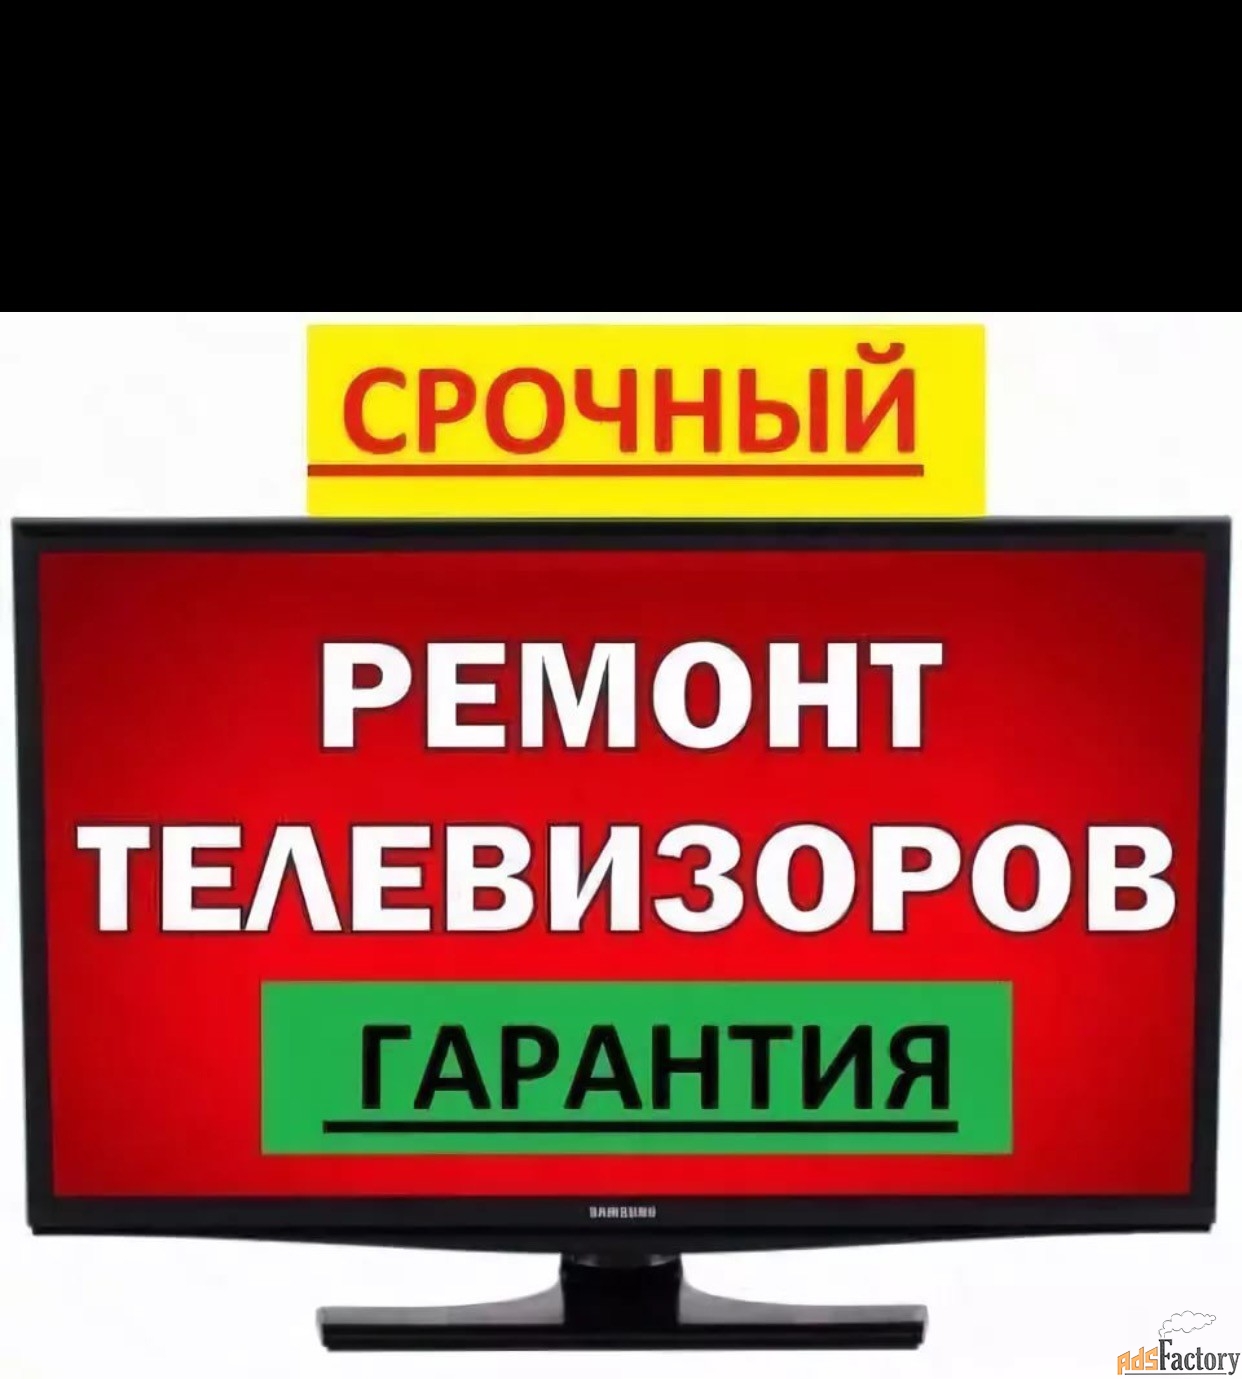 ремонт телевизоров любых моделей на дому в иваново тел городской 36999